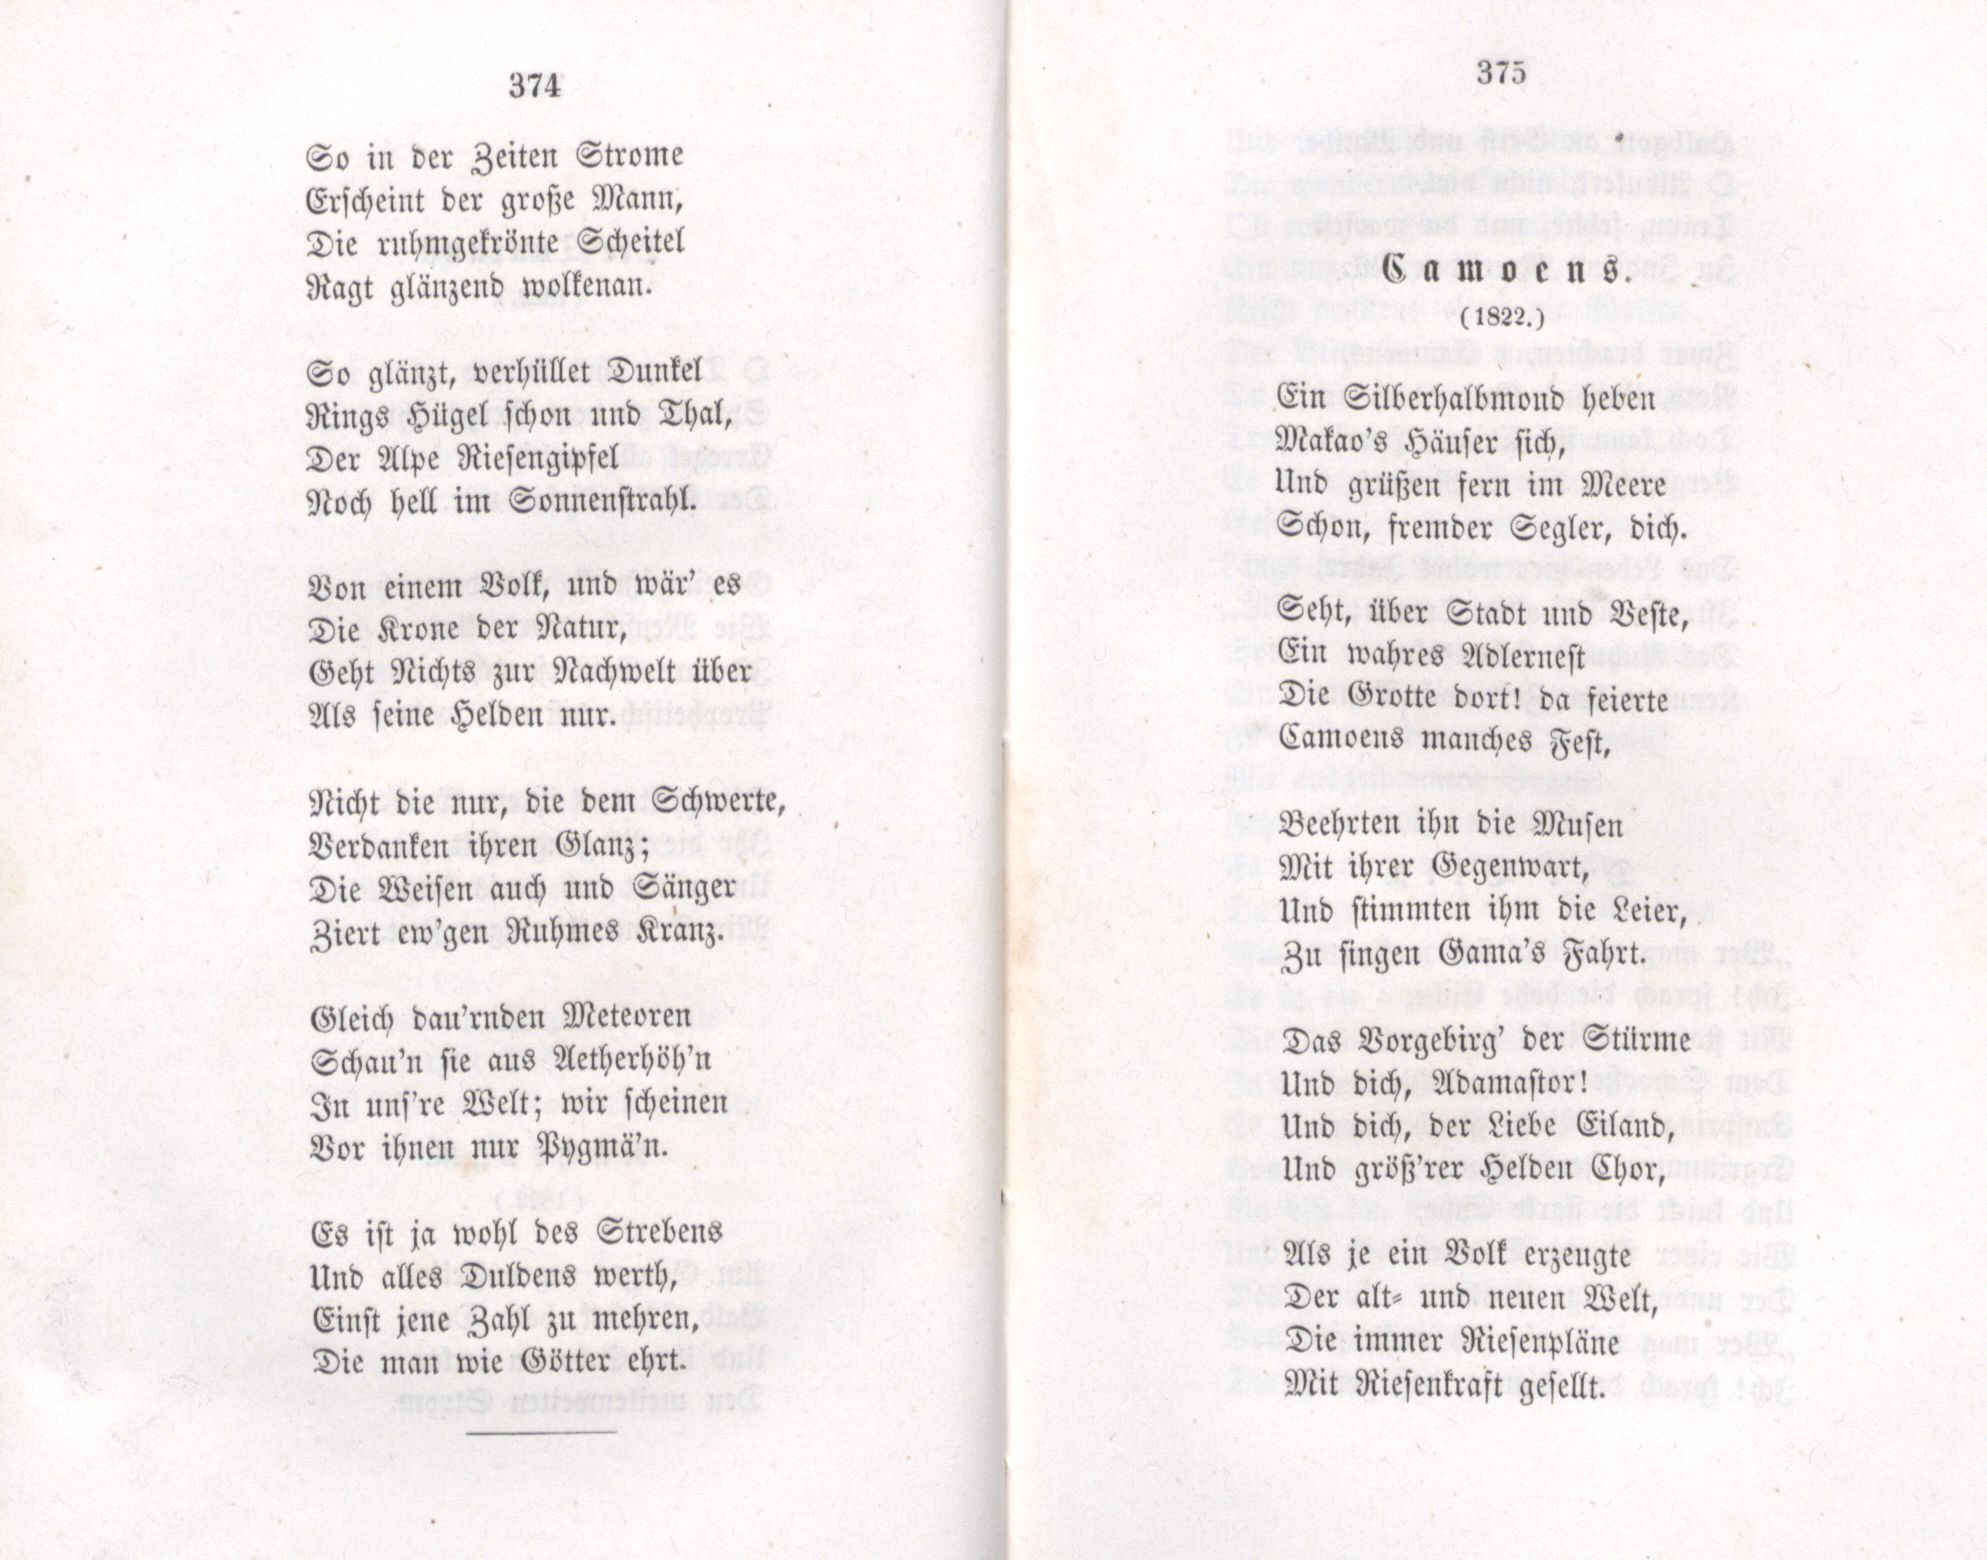 Camoens (1855) | 1. (374-375) Haupttext